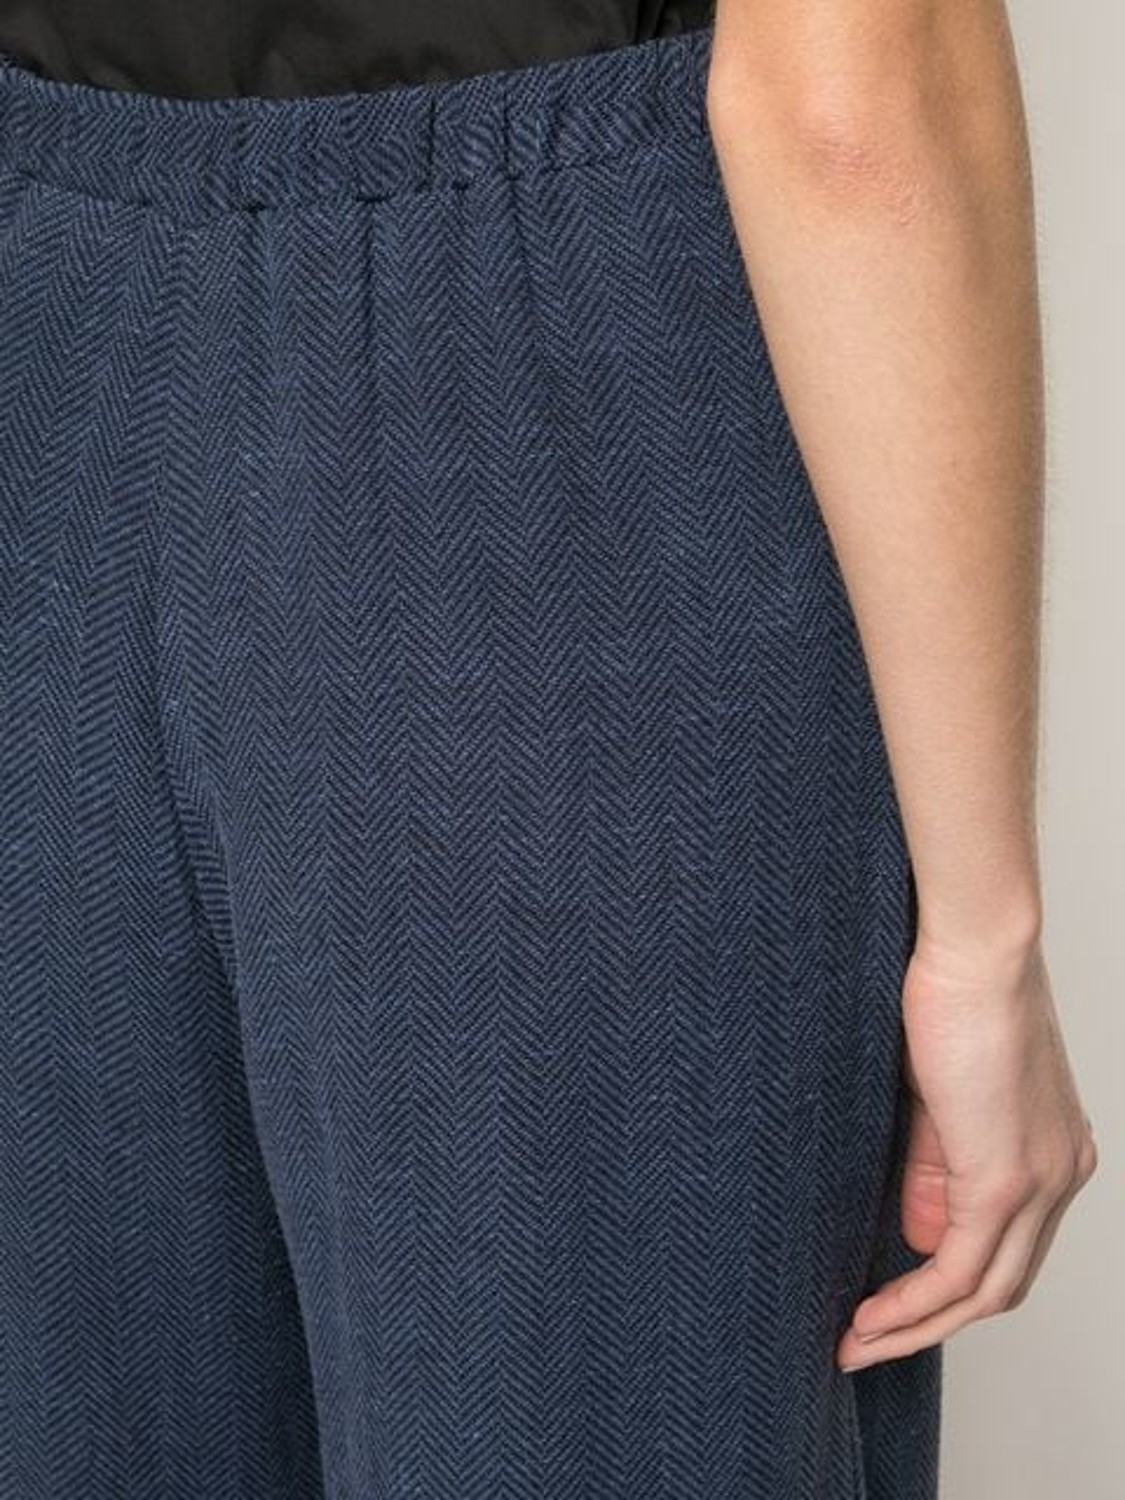 shop Dusan  Pantaloni: Pantalone Dusan, cavallo basso, vita regolare, zip e bottone a chiusura, tasche laterali, modello morbido.

Composizione: 100% lino. number 1490